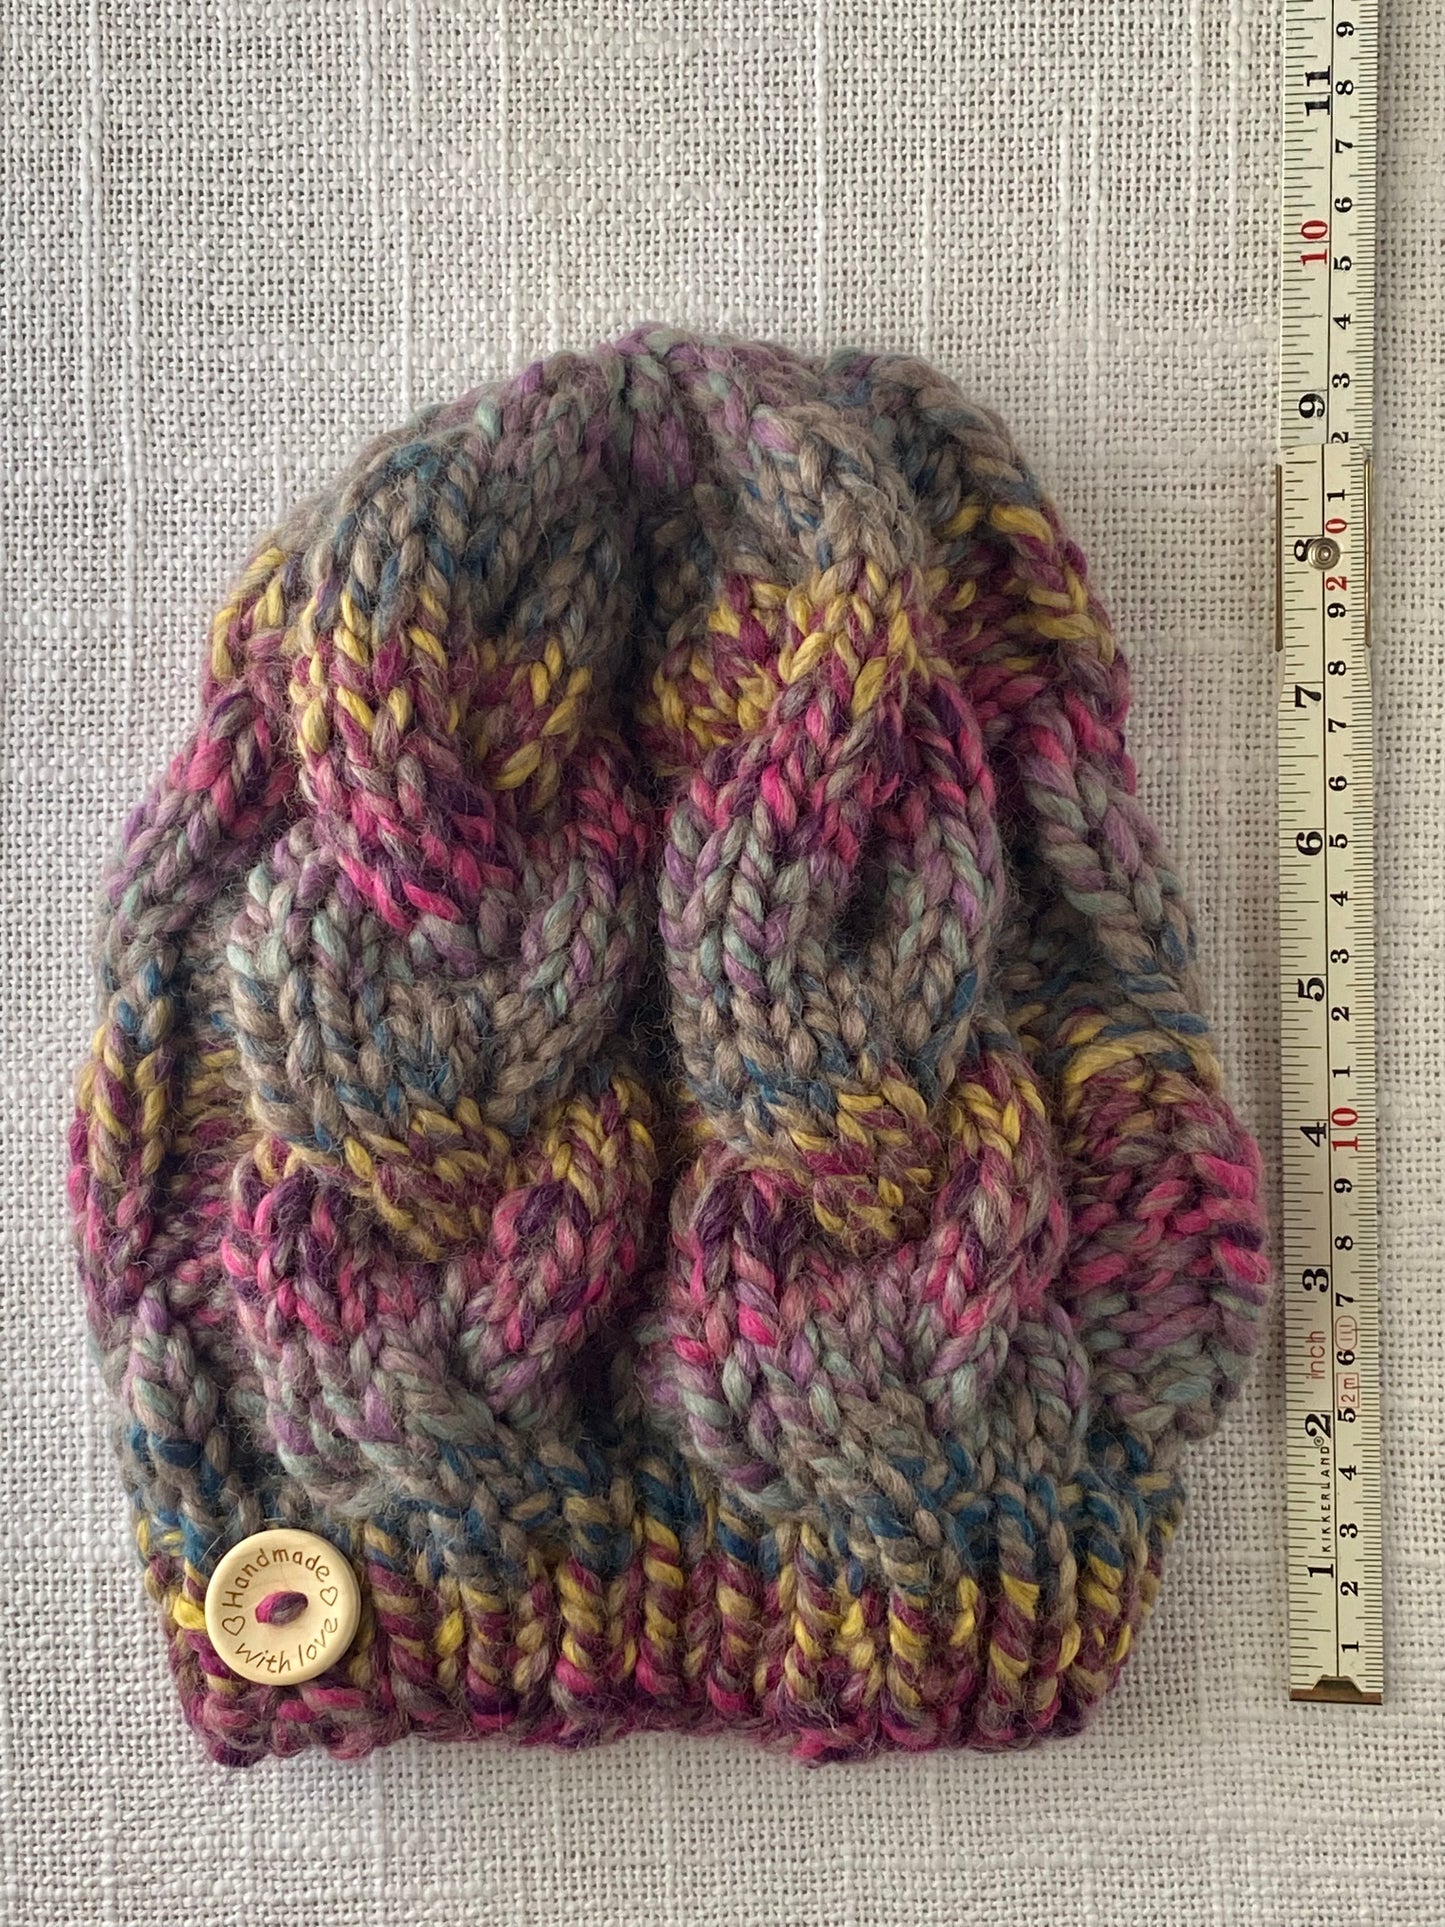 Cozy Cables Hat - Wool Blend Fiber - Patchwork